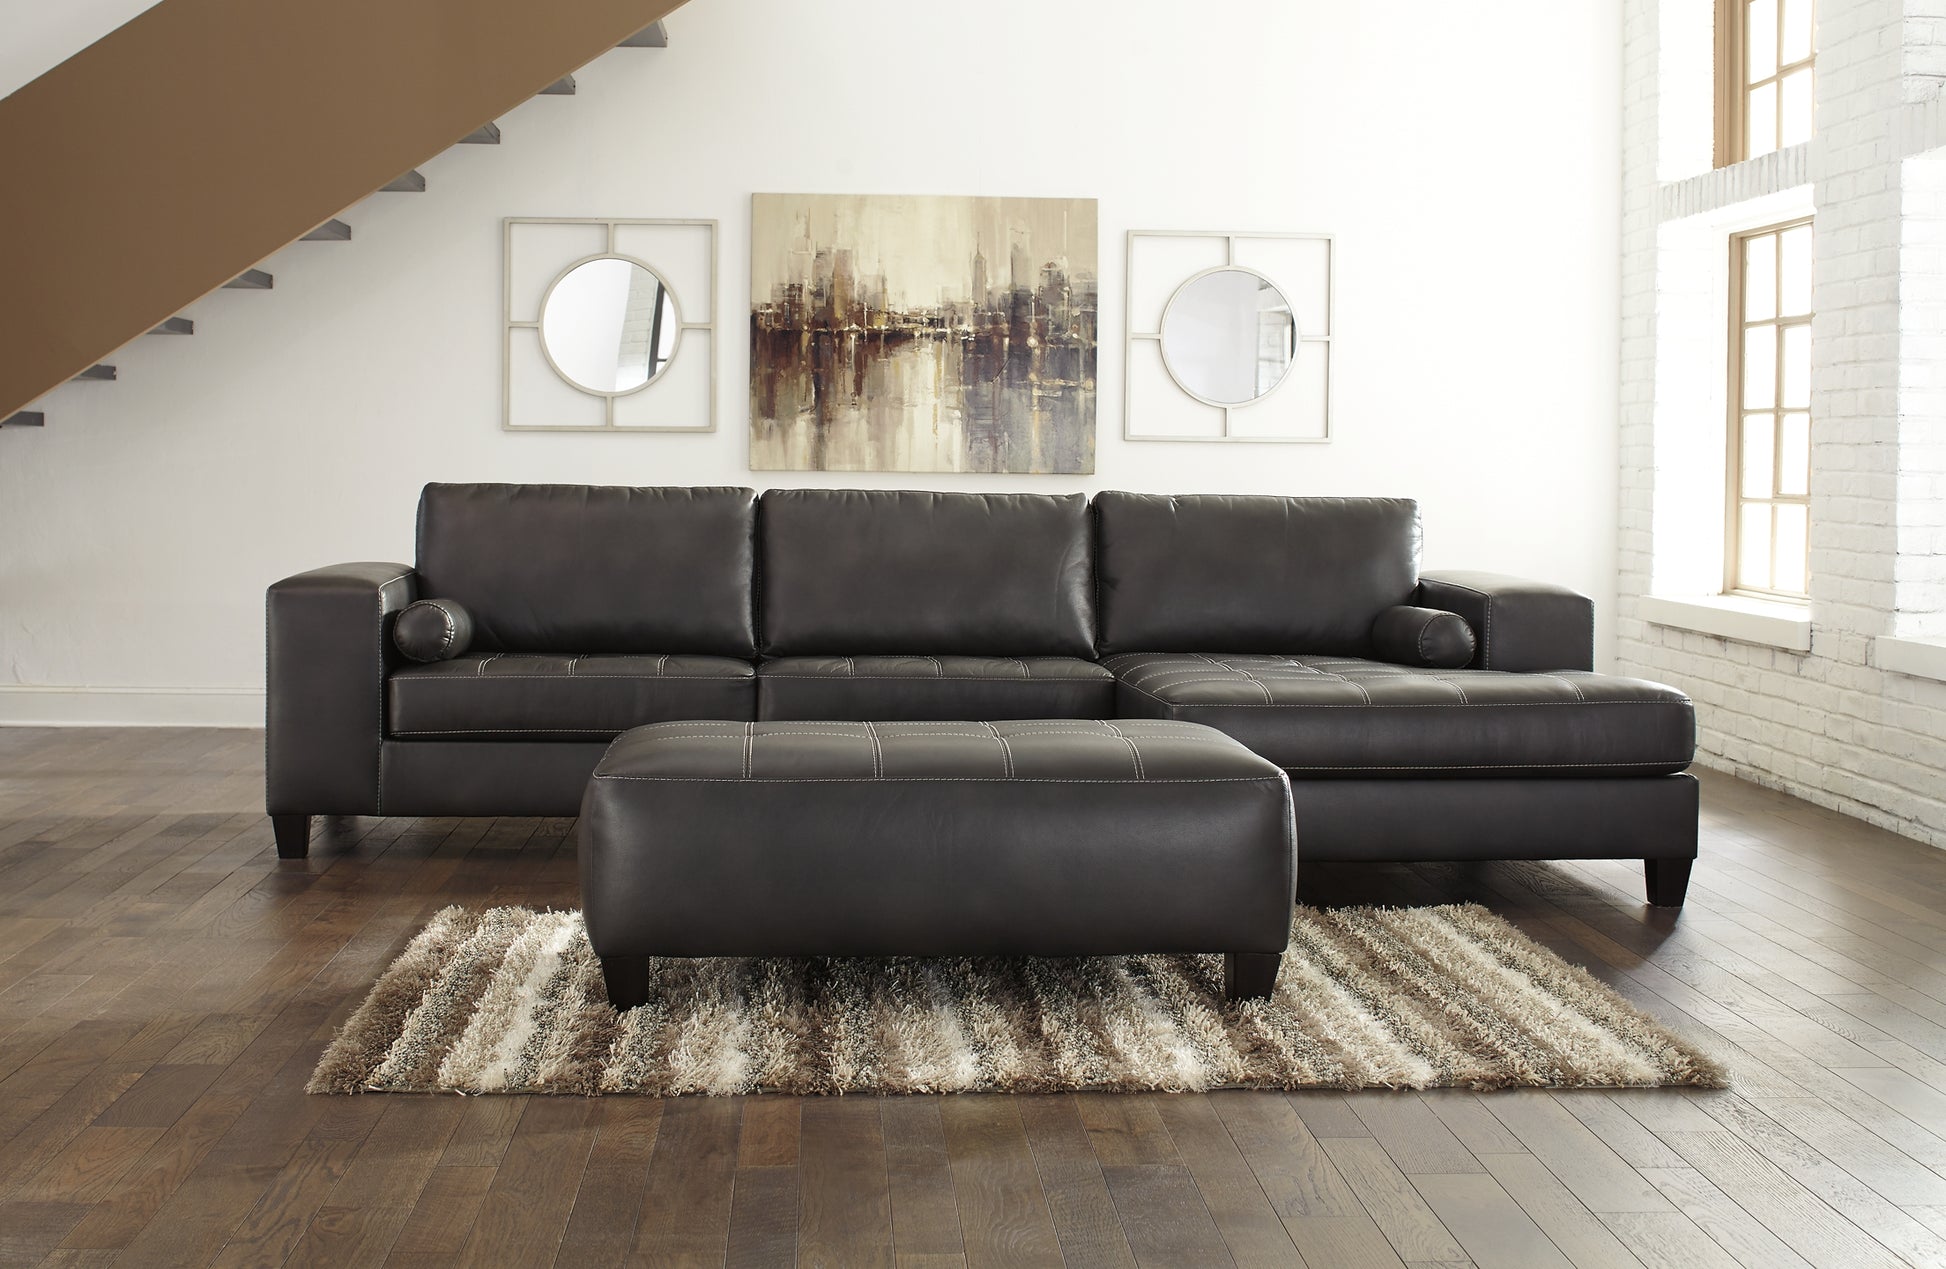 Nokomis 2-Piece Sectional with Ottoman JB's Furniture  Home Furniture, Home Decor, Furniture Store